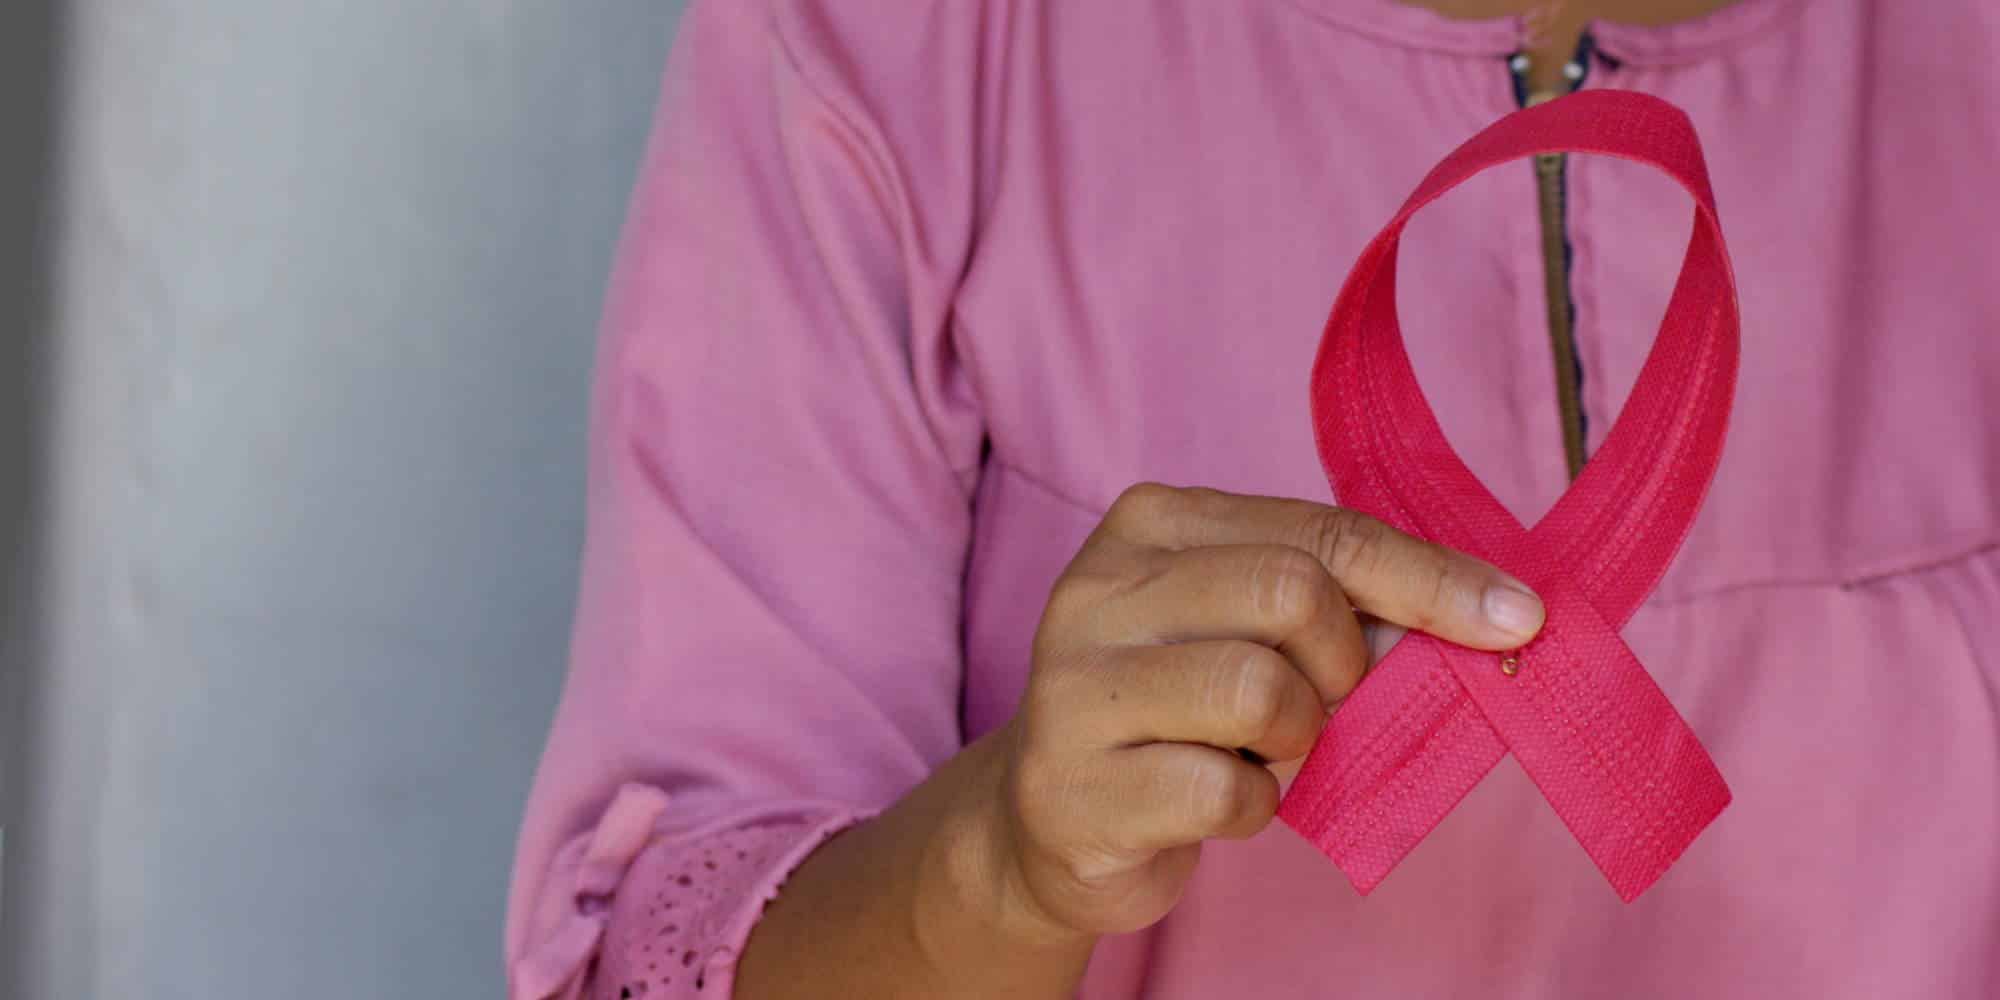 Γυναίκα κρατά την κορδέλα που συμβολίζει την επαγρύπνηση ενάντια στον καρκίνο του μαστού